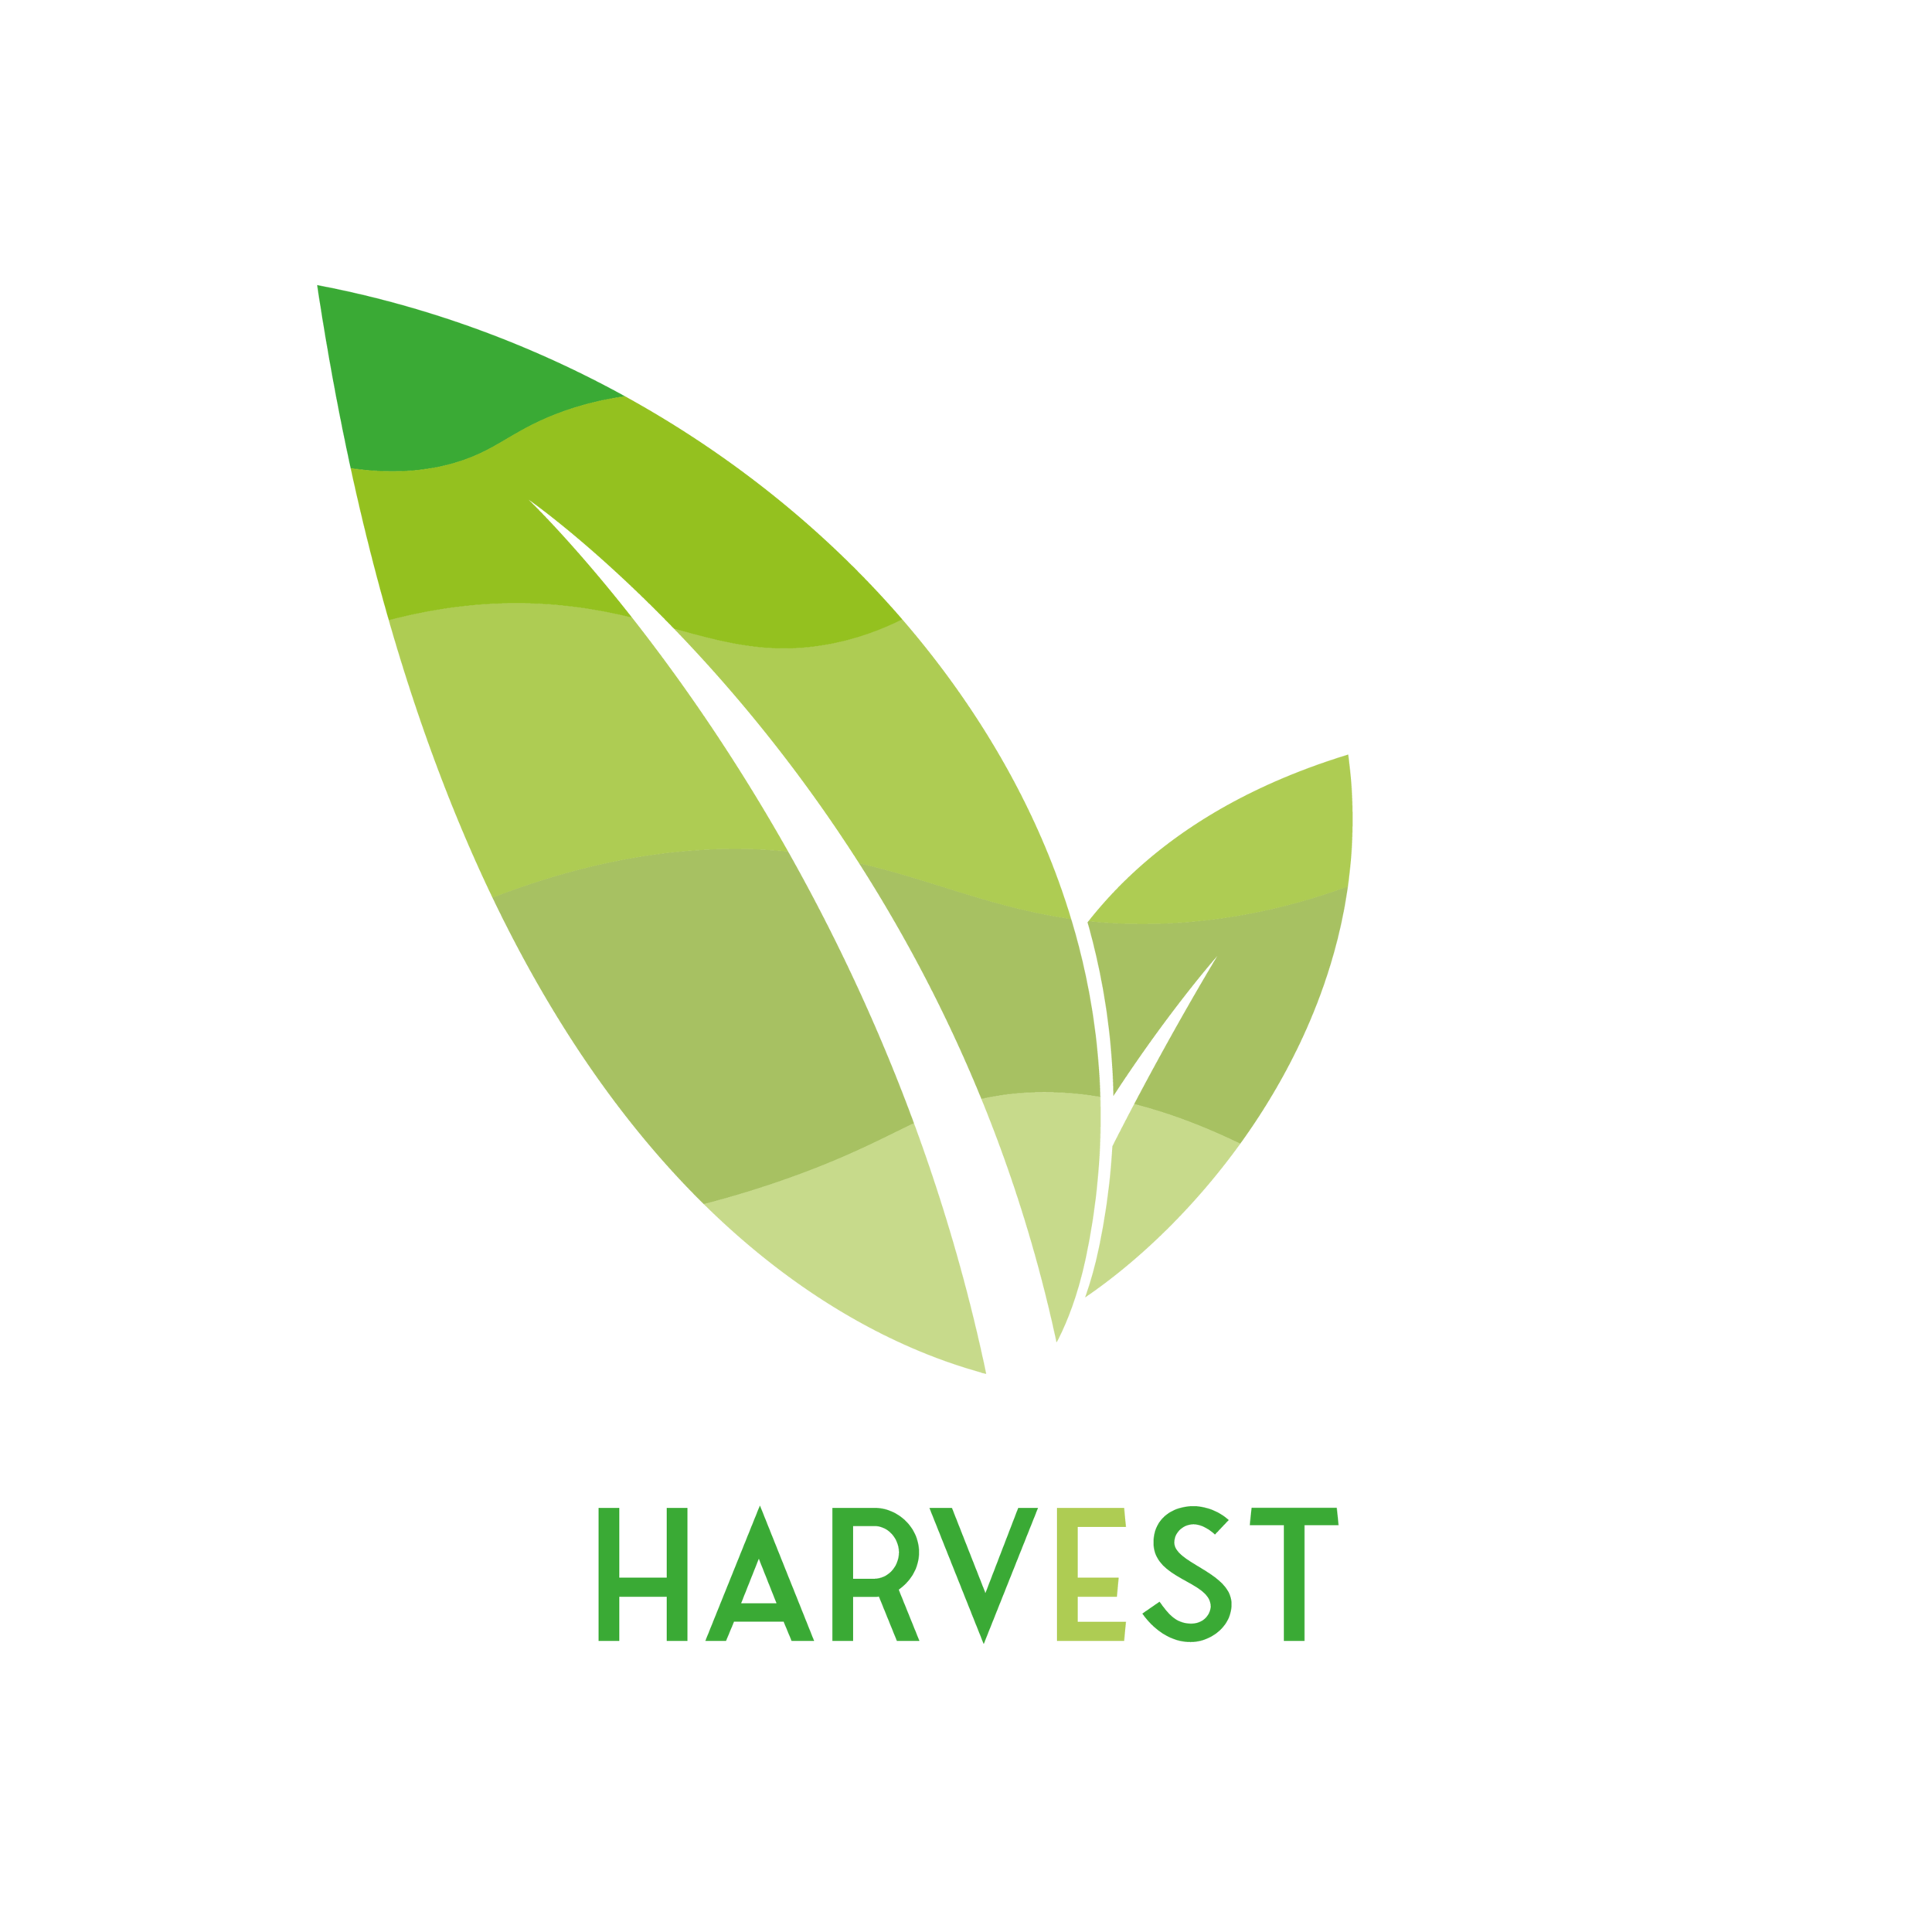 Harvest Transparent.png